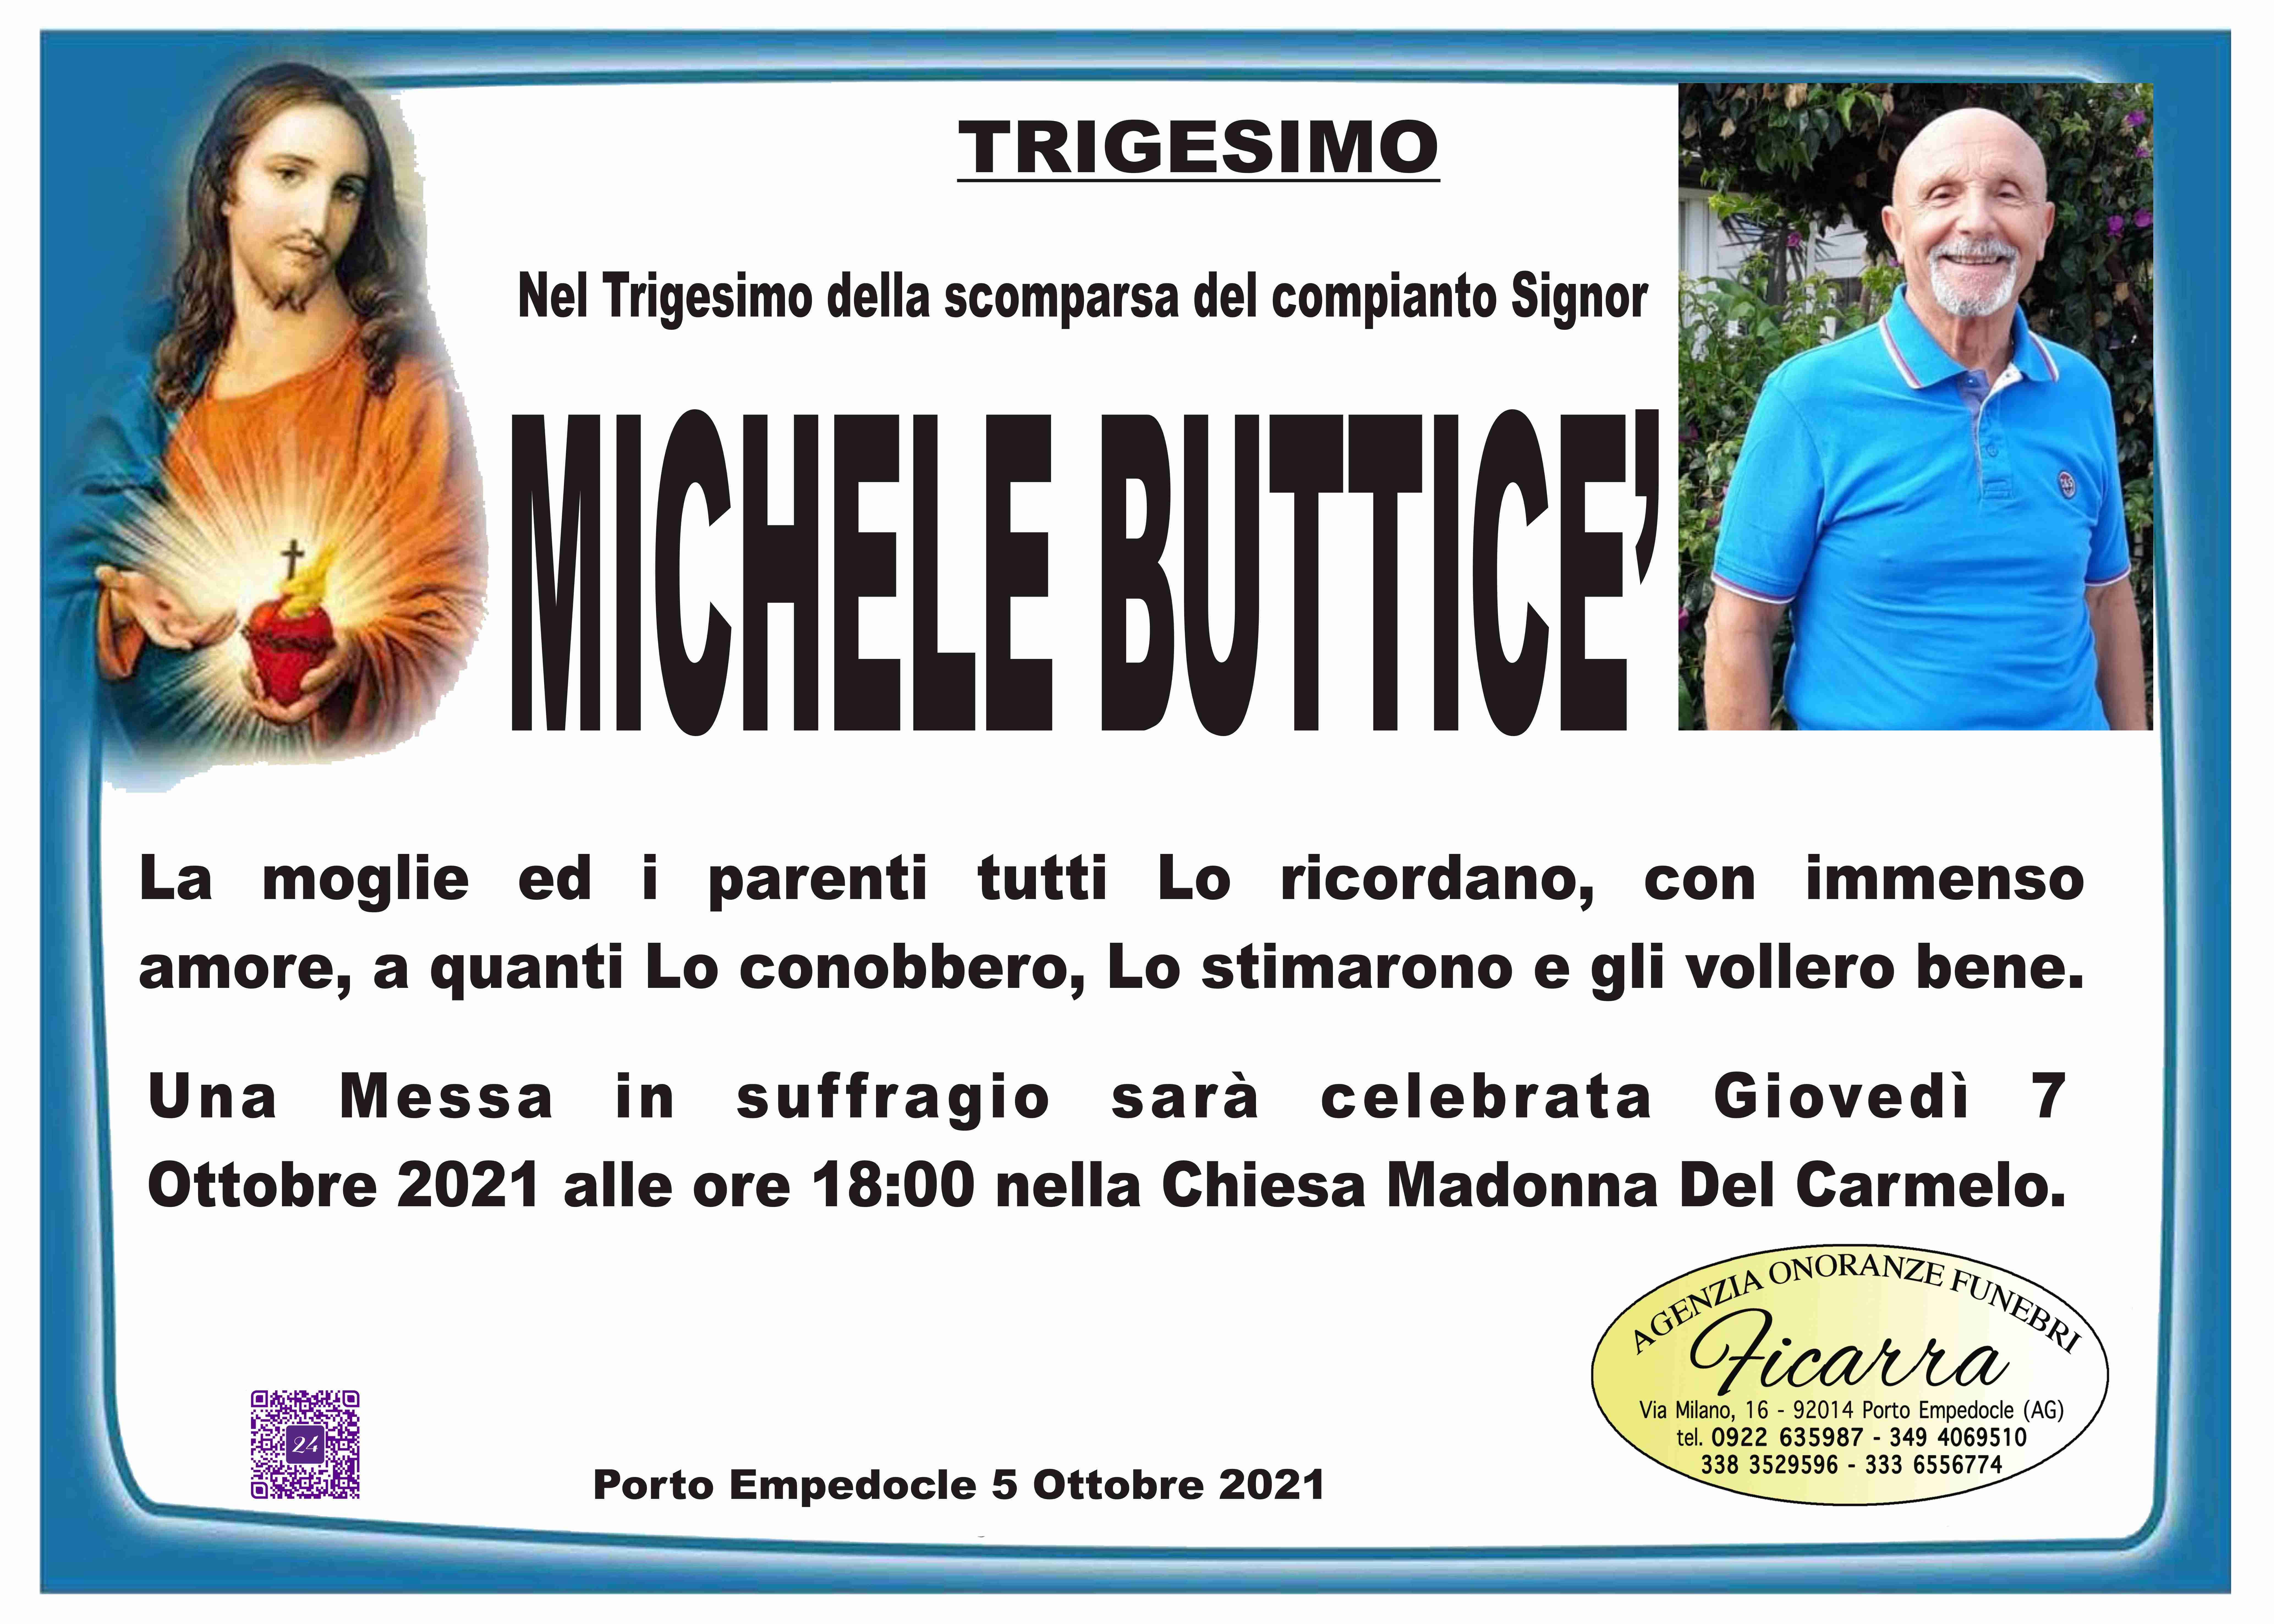 Michele Butticè